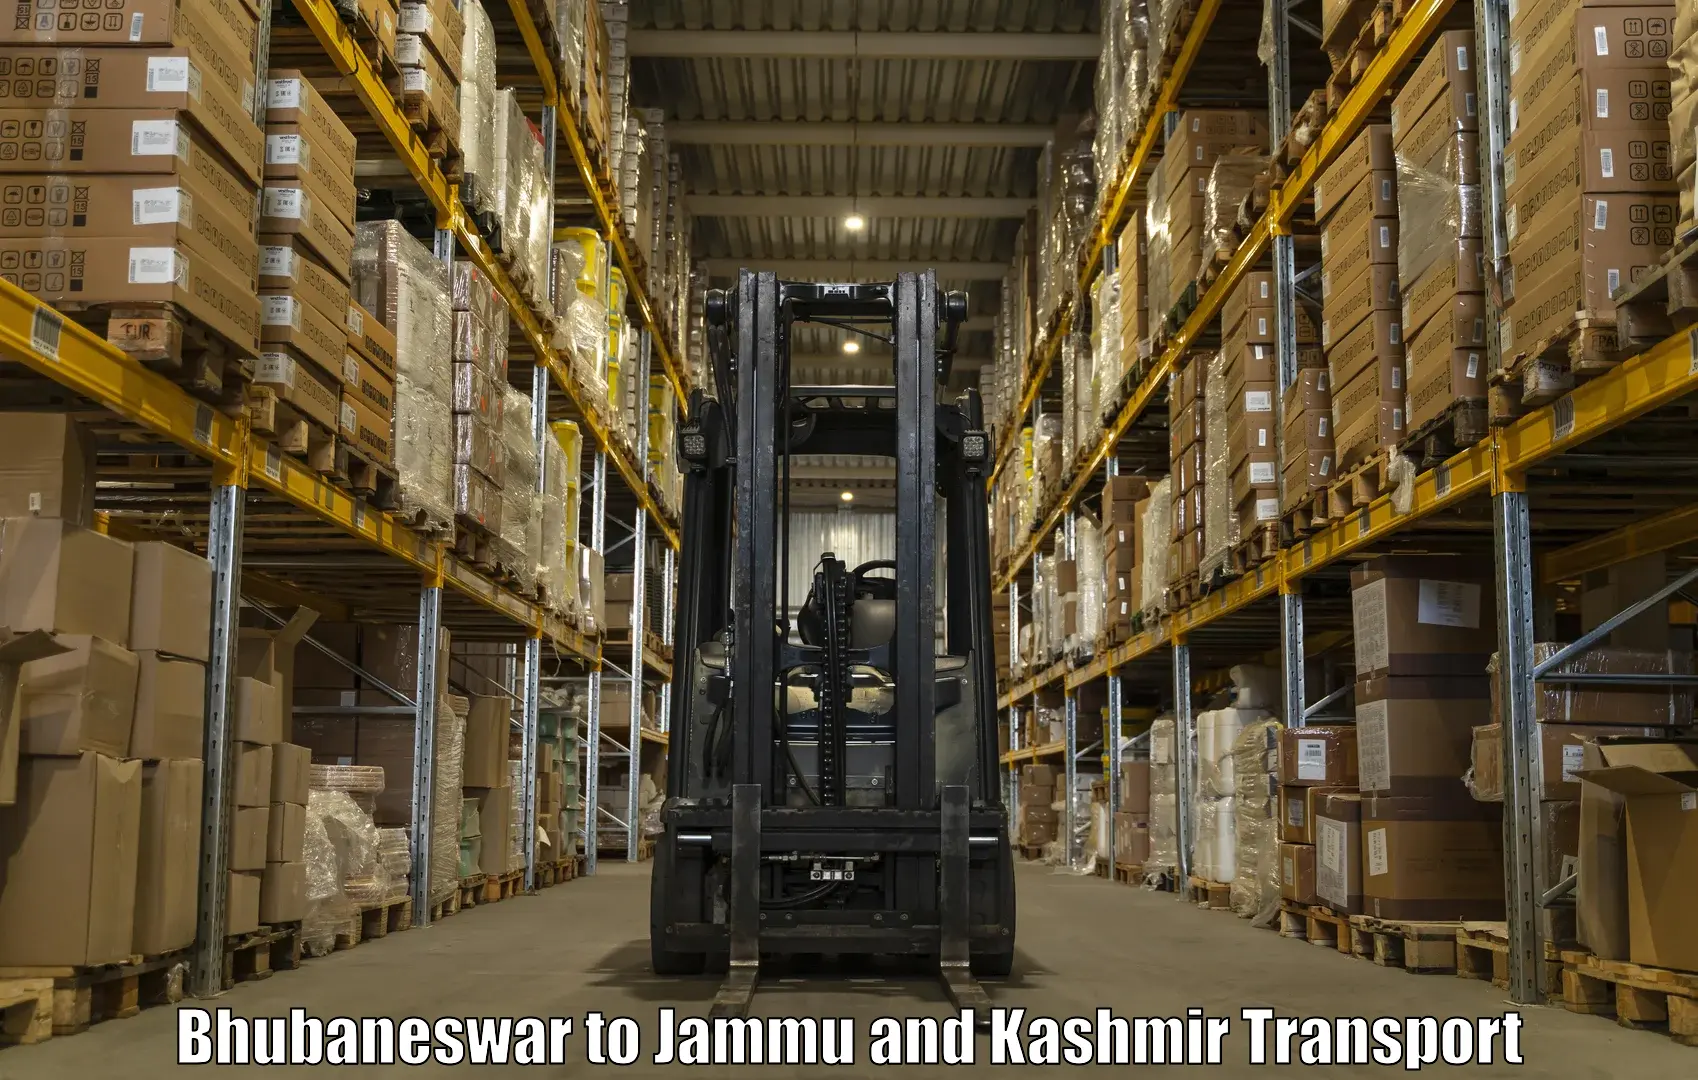 Air cargo transport services Bhubaneswar to Kargil